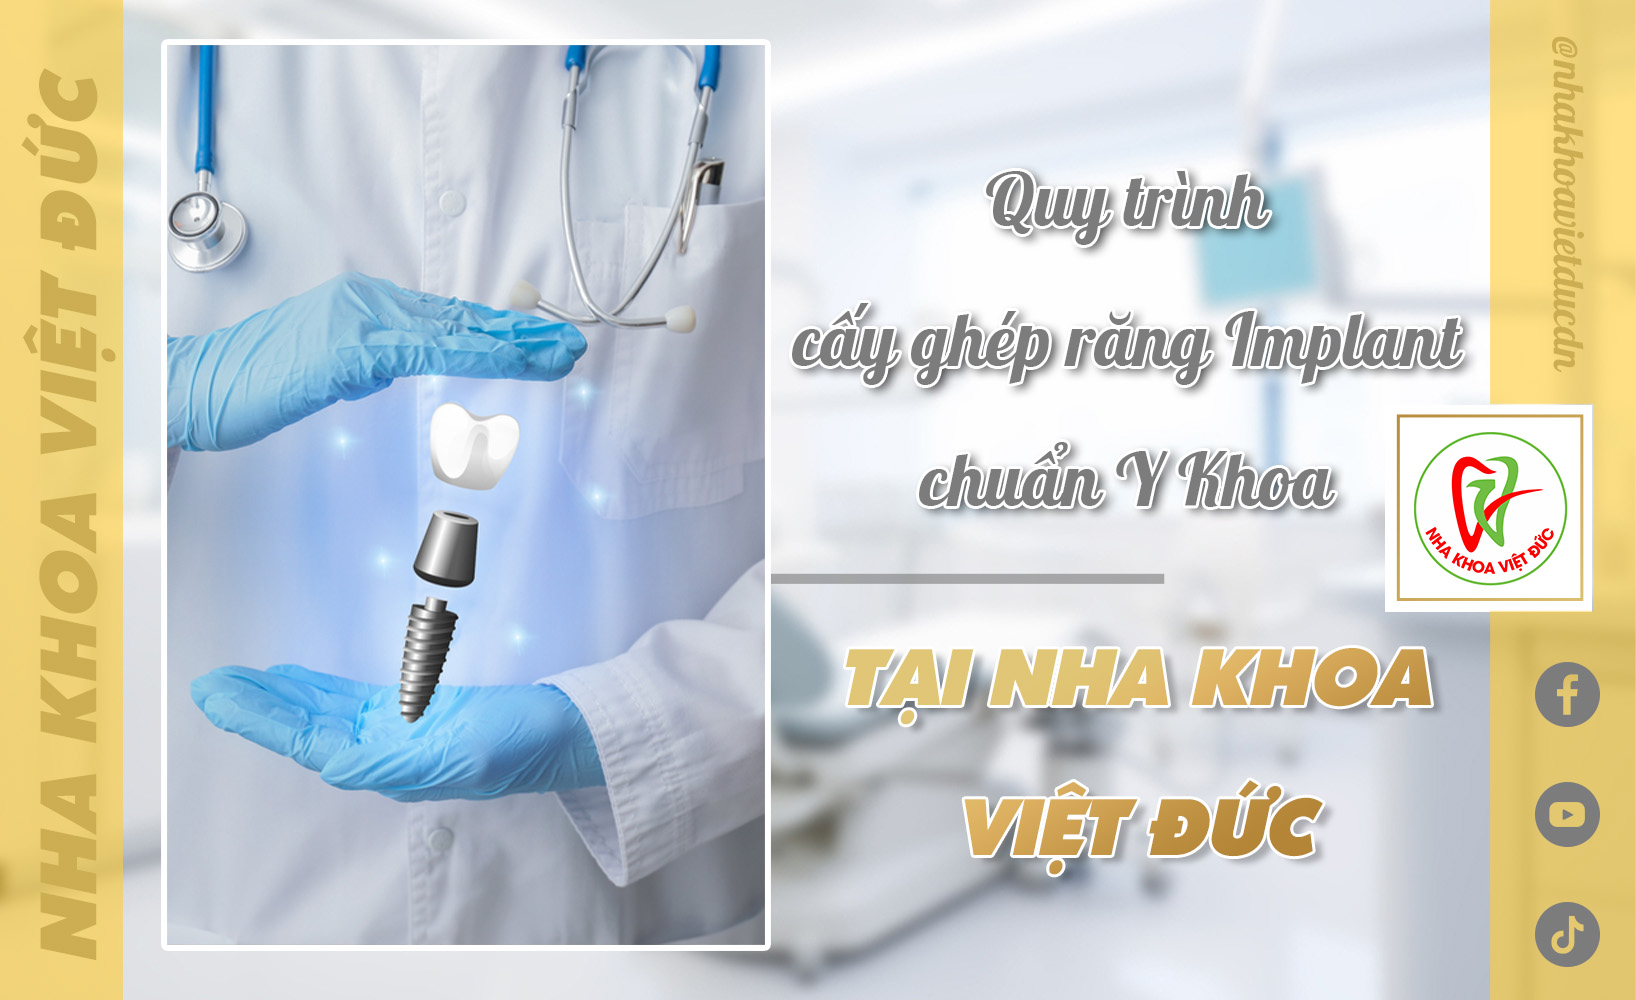 Quy trình cấy ghép răng Implant chuẩn y khoa tại Nha khoa Việt Đức